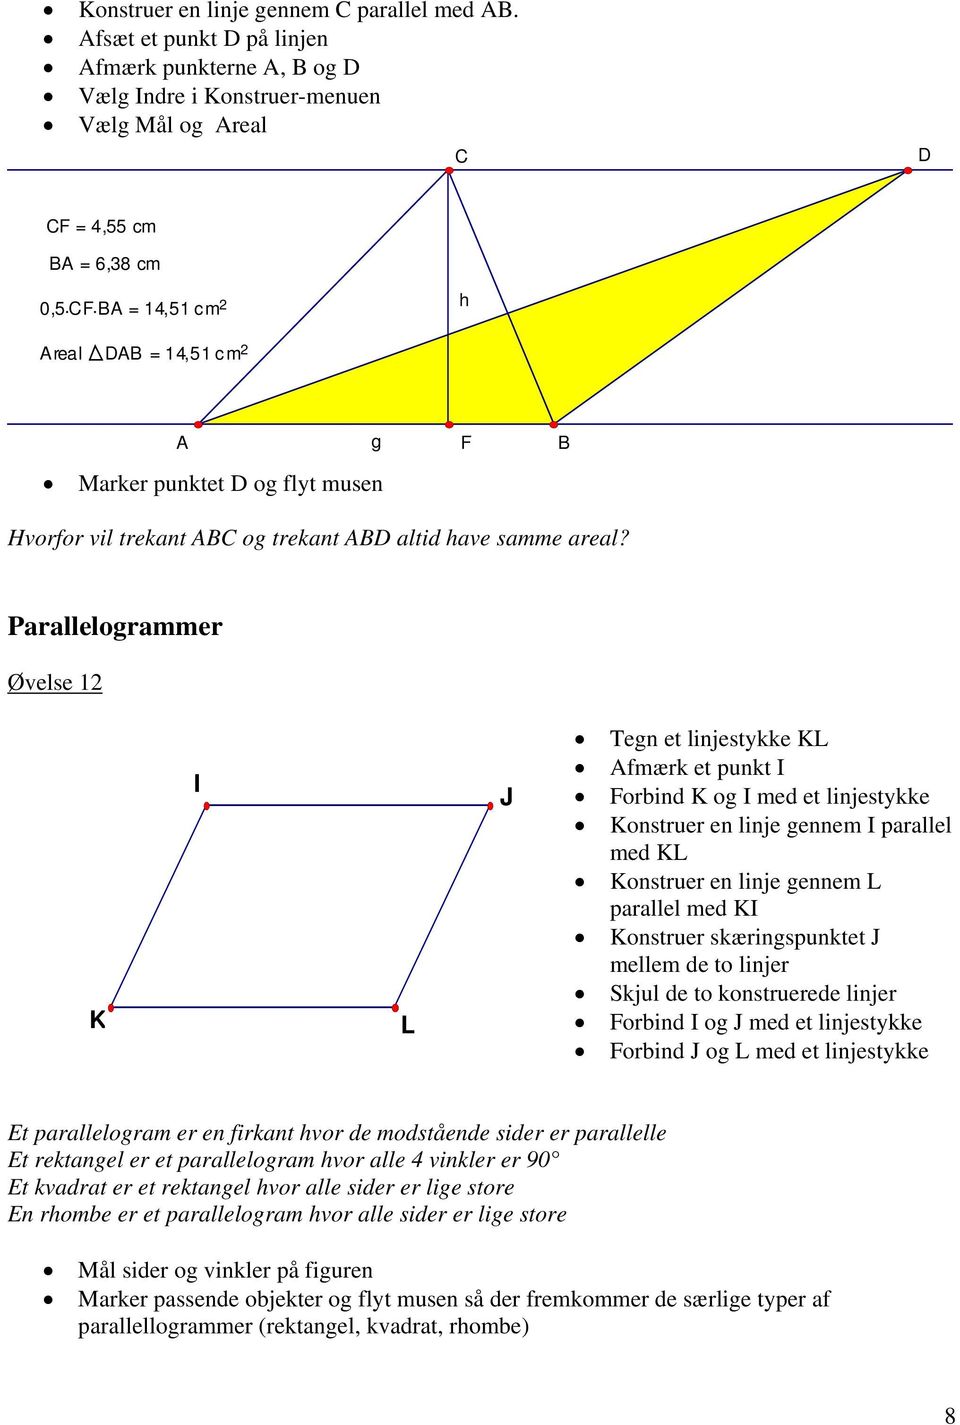 Hvorfor vil trekant og trekant D altid have samme areal?